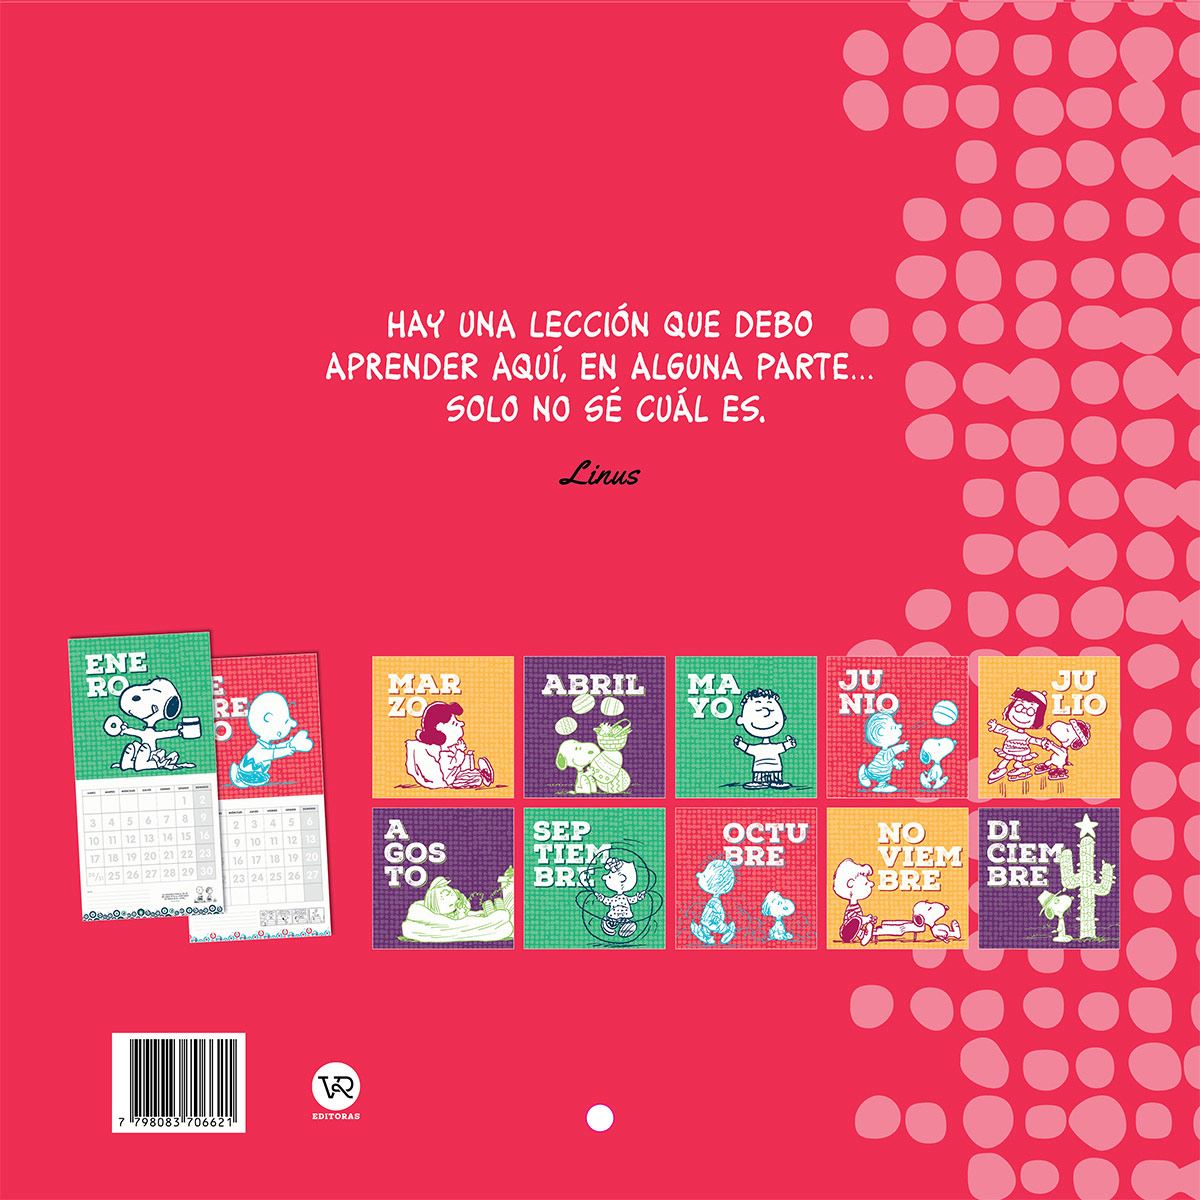 Calendario Snoopy 2022